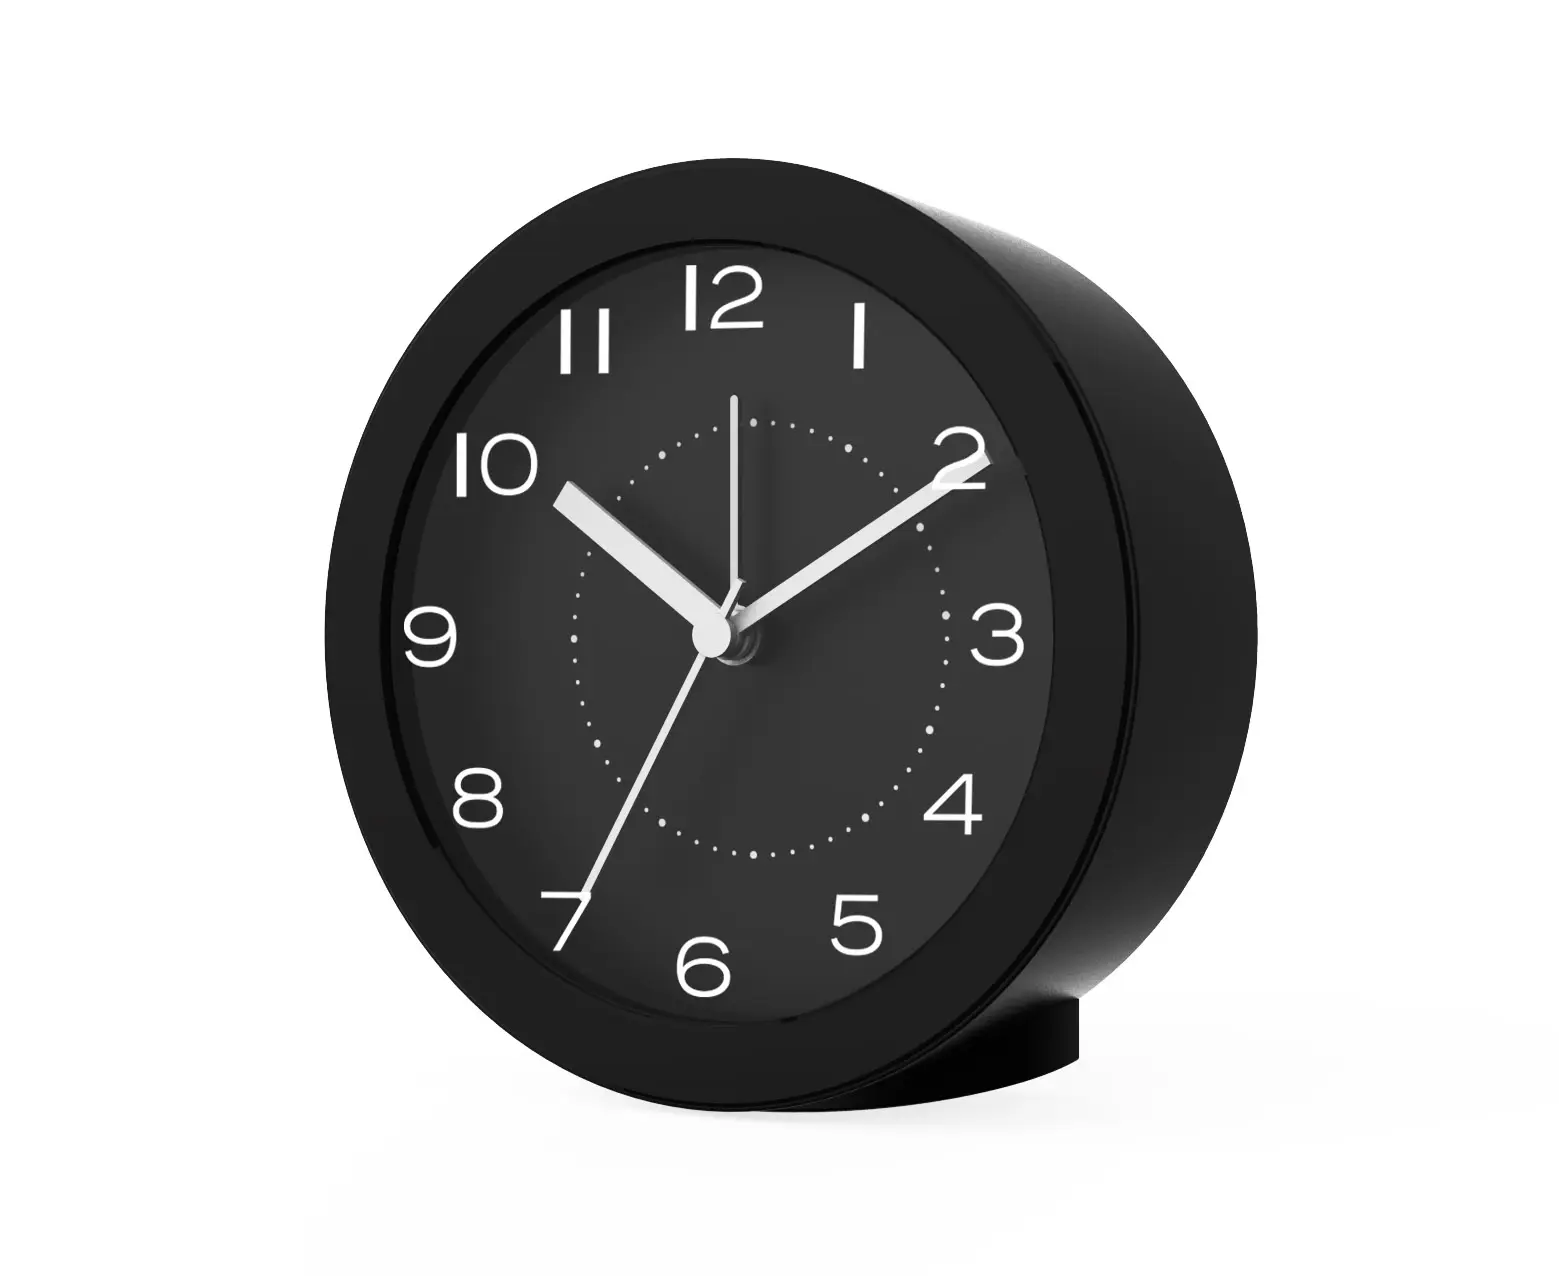 Réveil intelligent Quartz temps Snooze rétro-éclairage classique rond Table de bureau horloges de chevet horloge murale numérique électrique